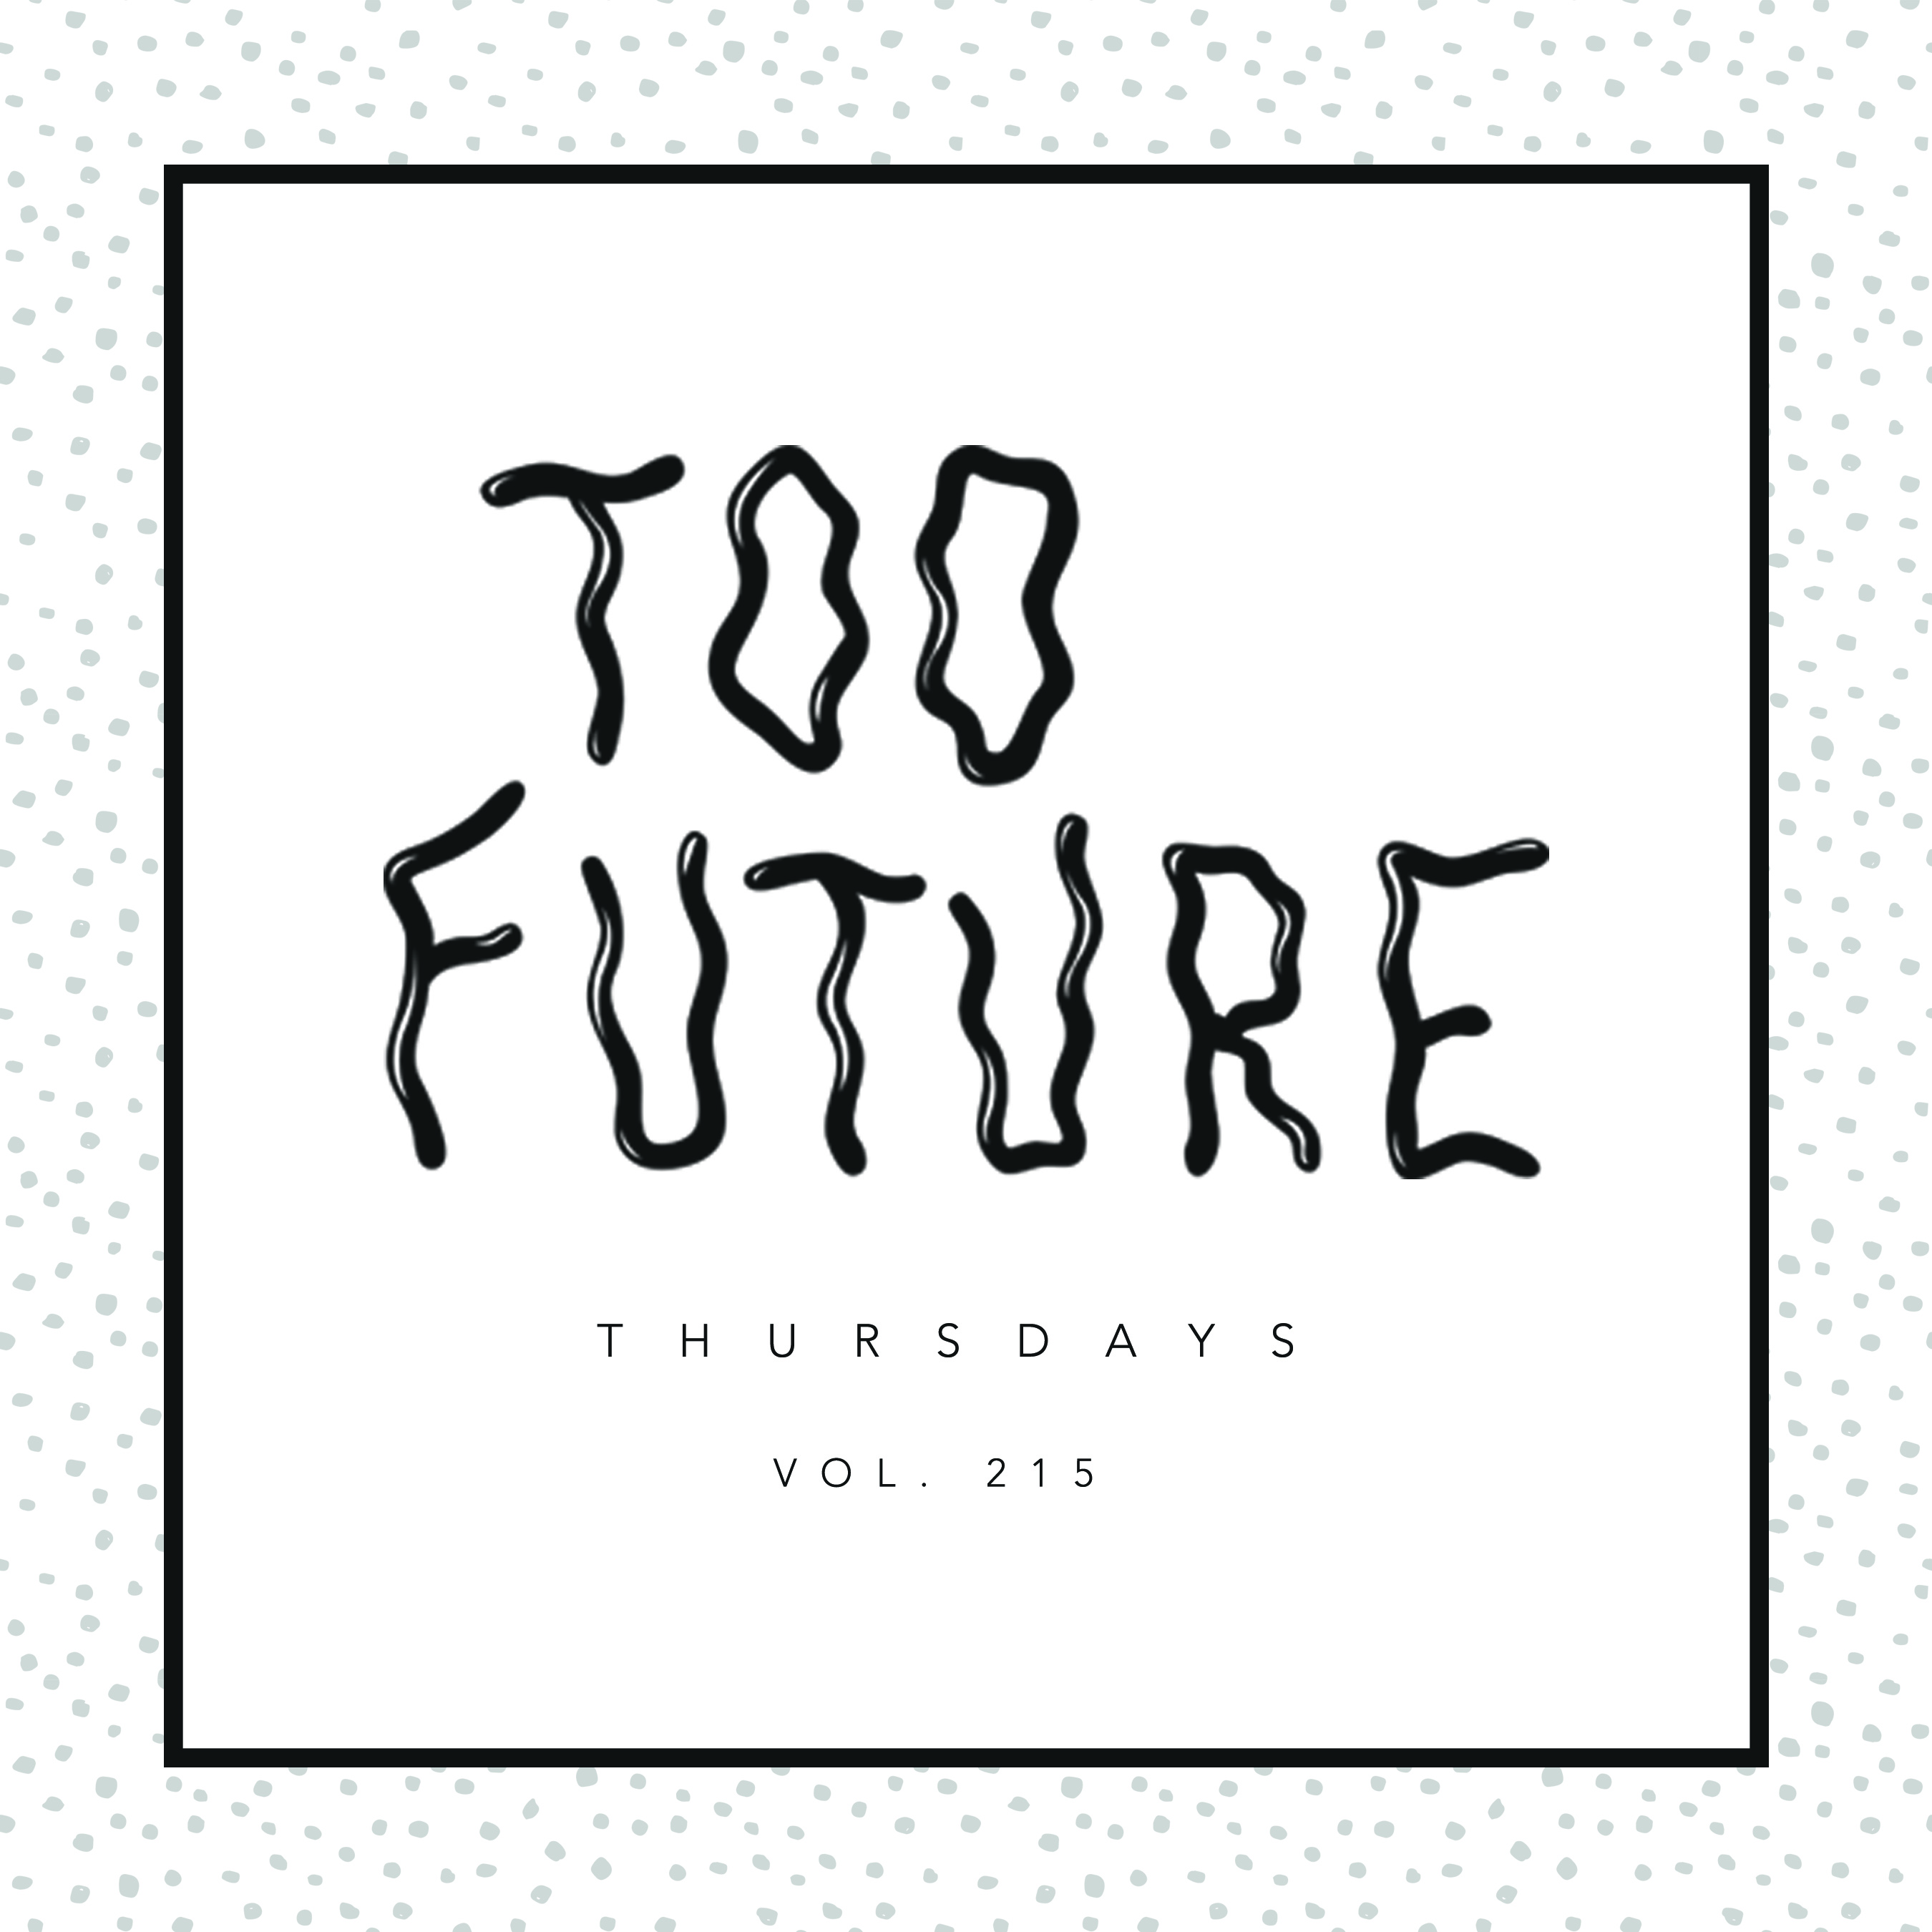 too-future-thursdays-vol-215